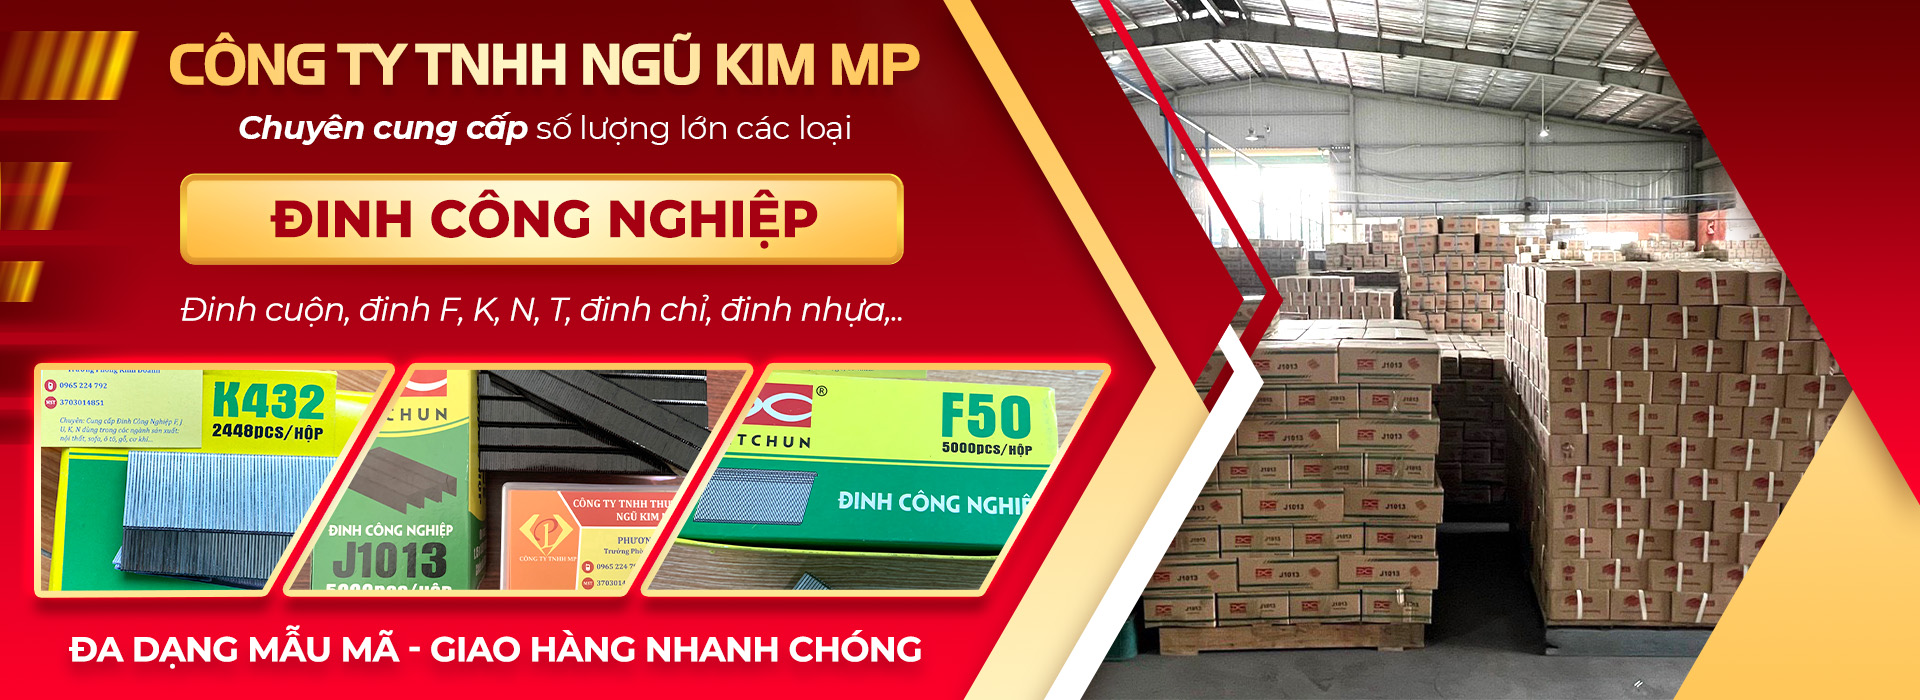 Công Ty TNHH Ngũ Kim MP